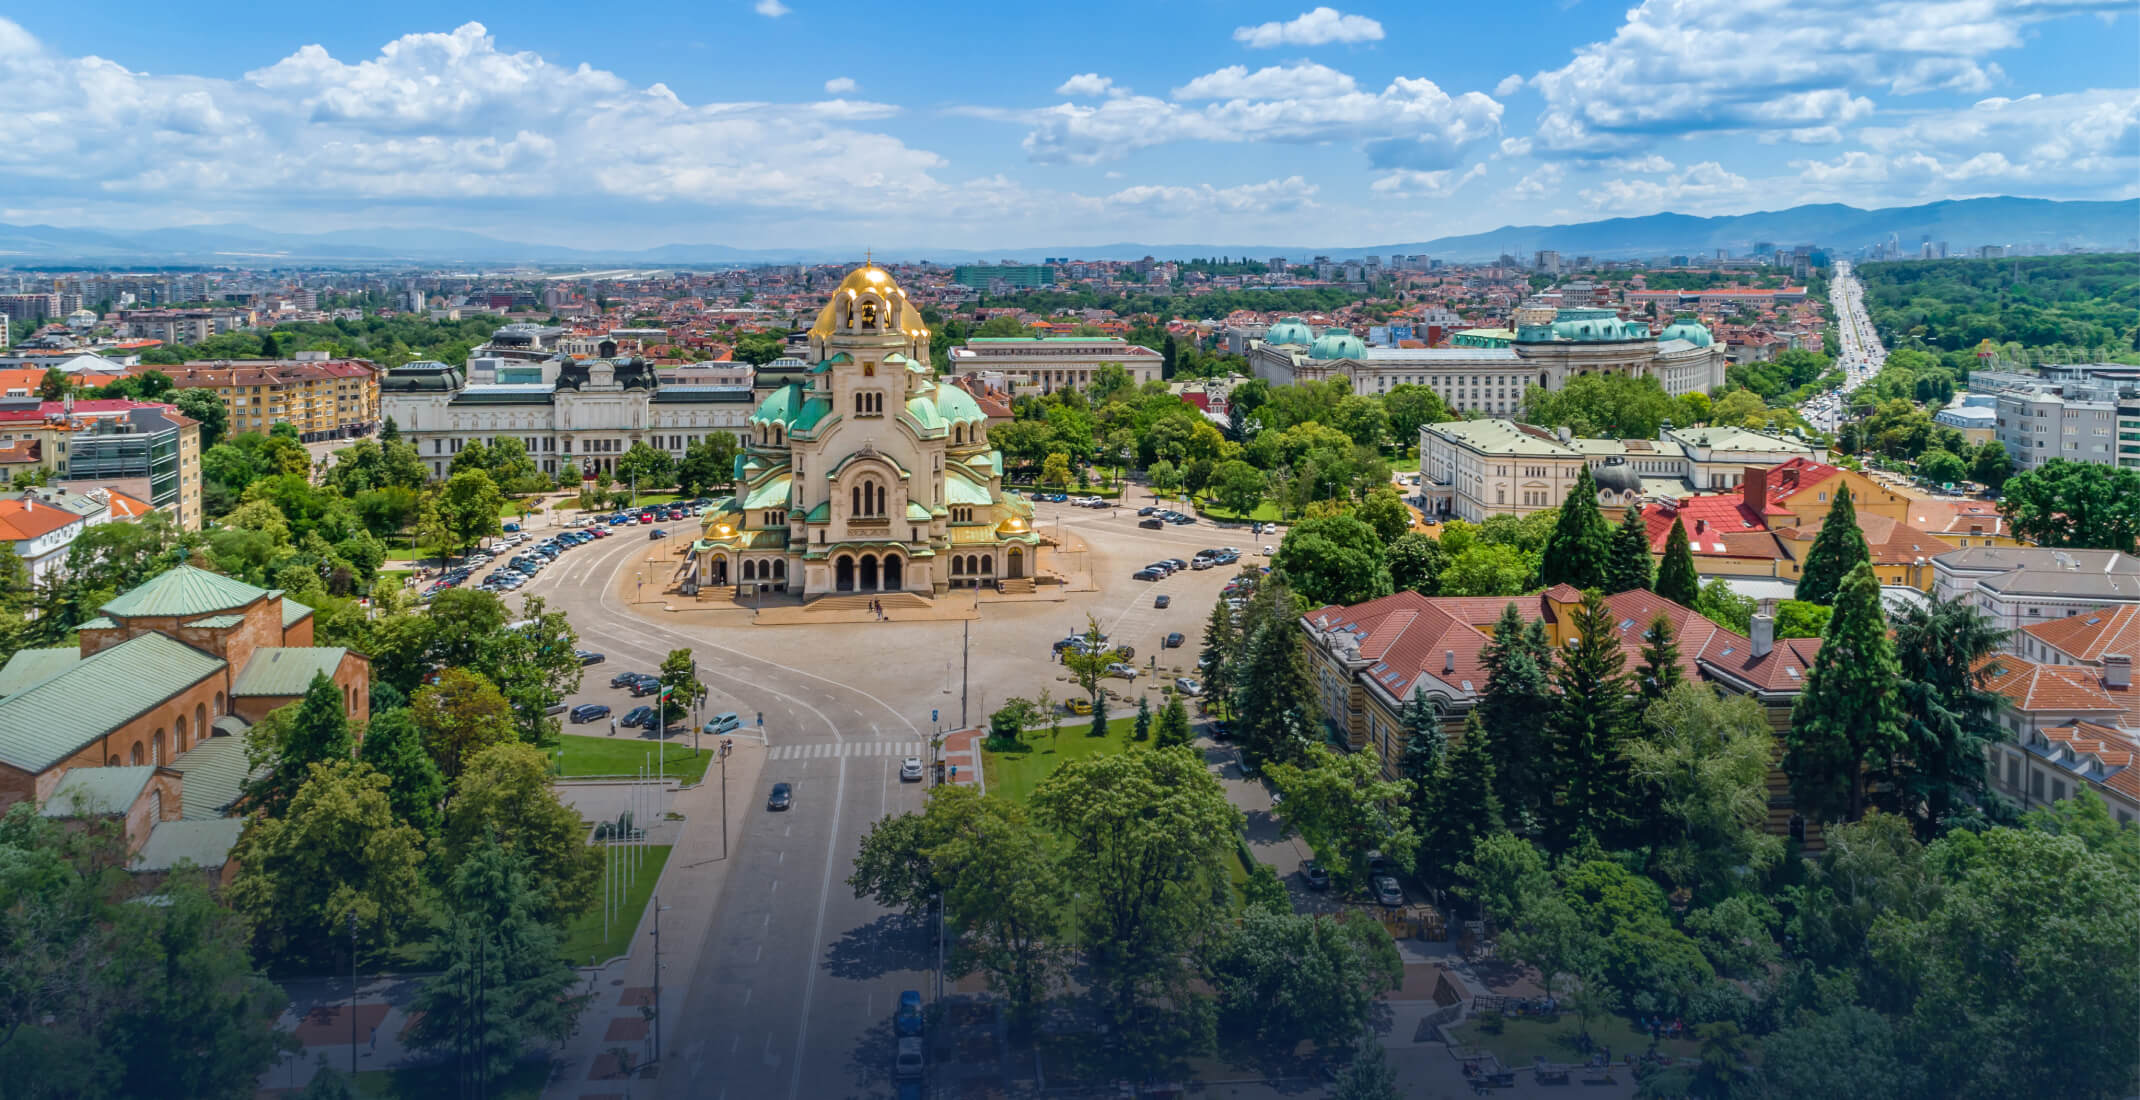 Sofia, Bulgaria Image